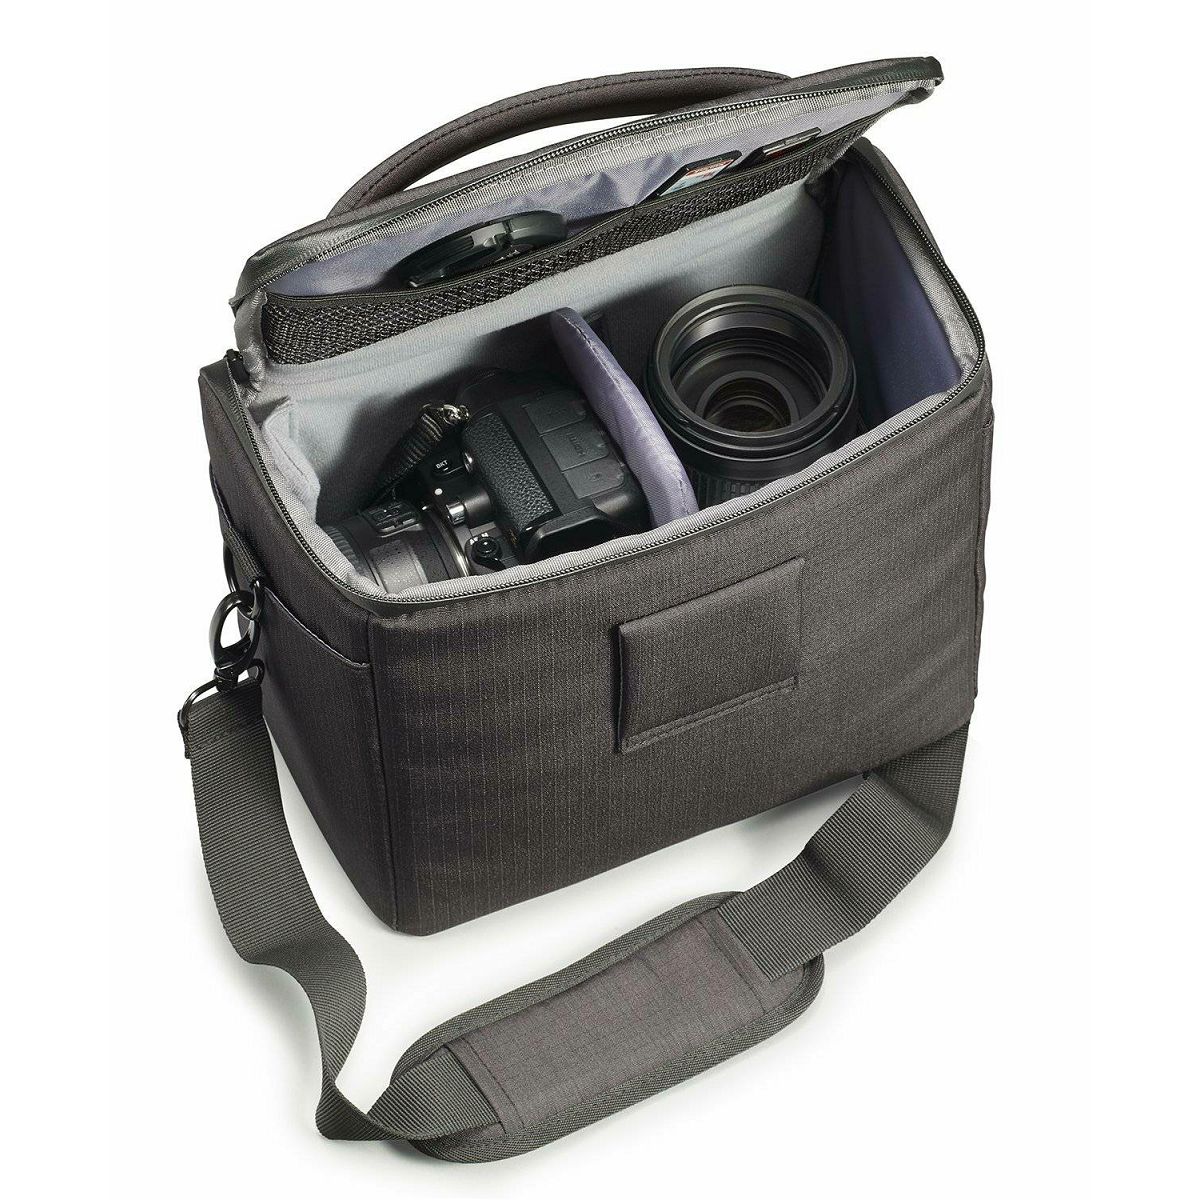 Cullmann Malaga Maxima 200 Black crna torba za DSLR fotoaparat i foto opremu 230x180x130mm 395g (90400)